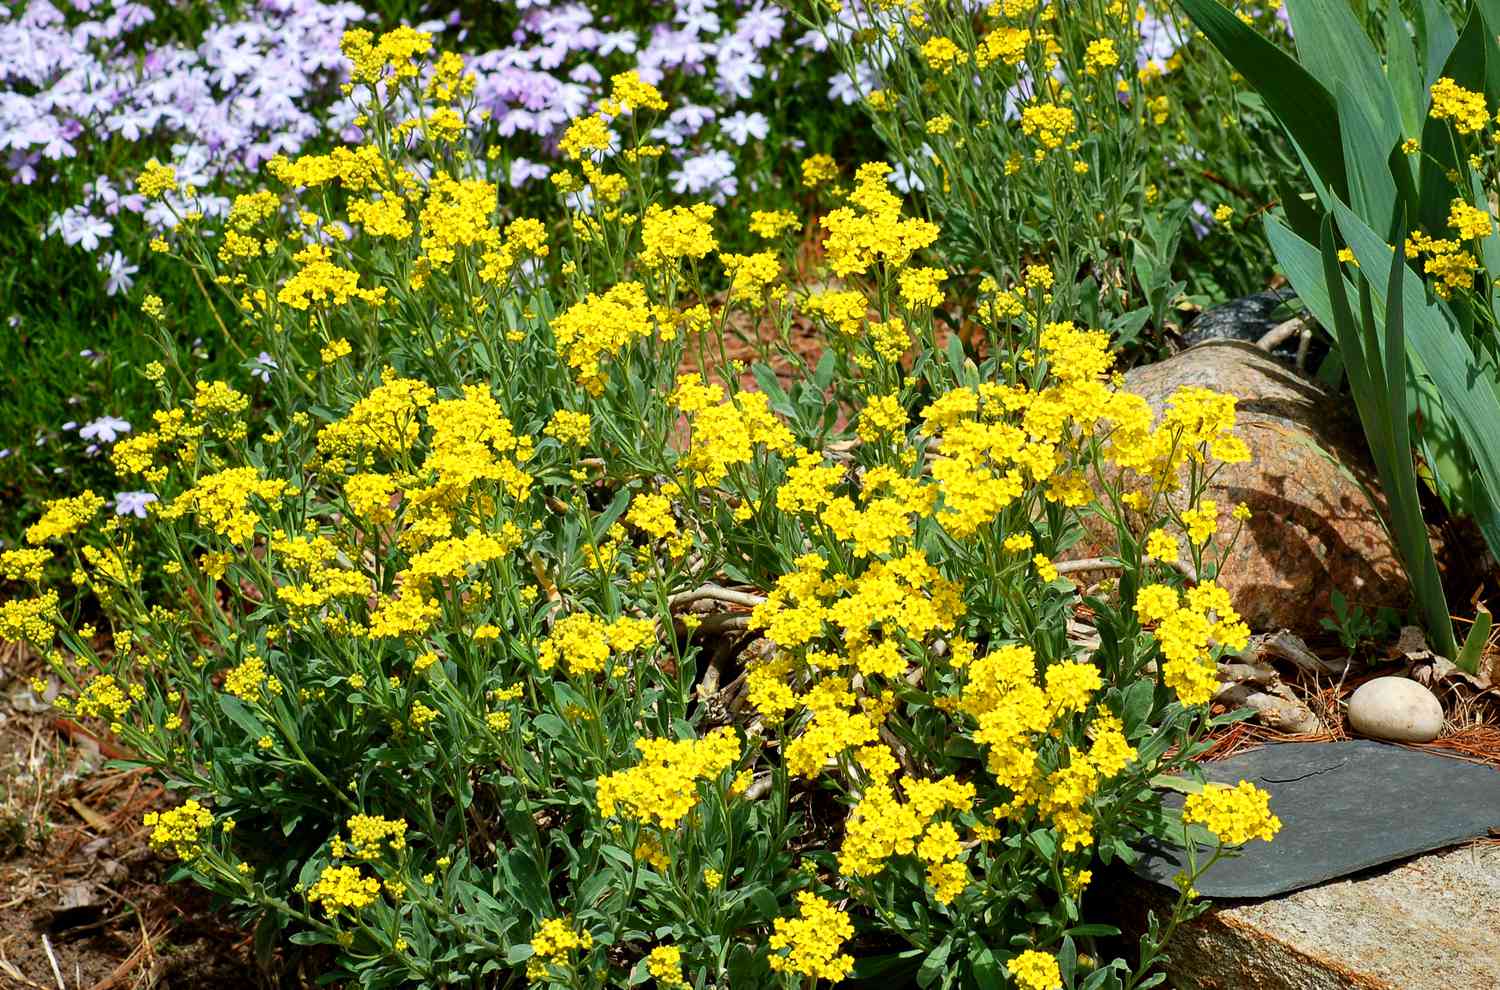 Flores amarelas de alyssum em meio a flores de phlox e rochas.